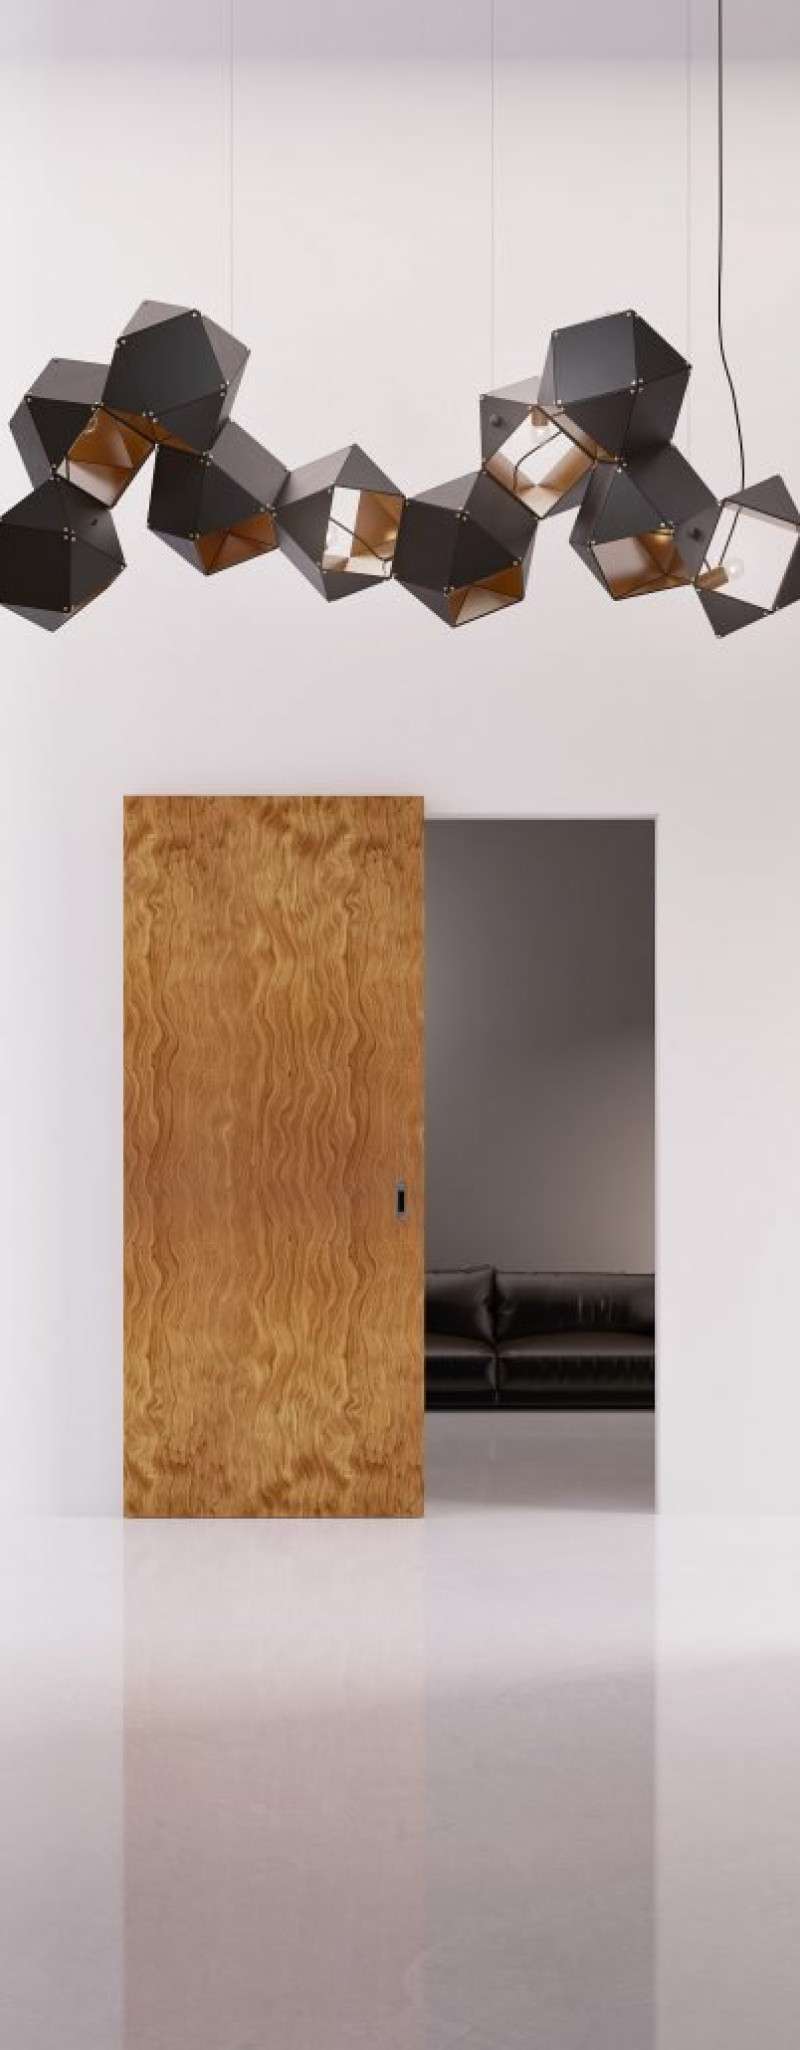 Wooden interior door with hidden aluminum frame